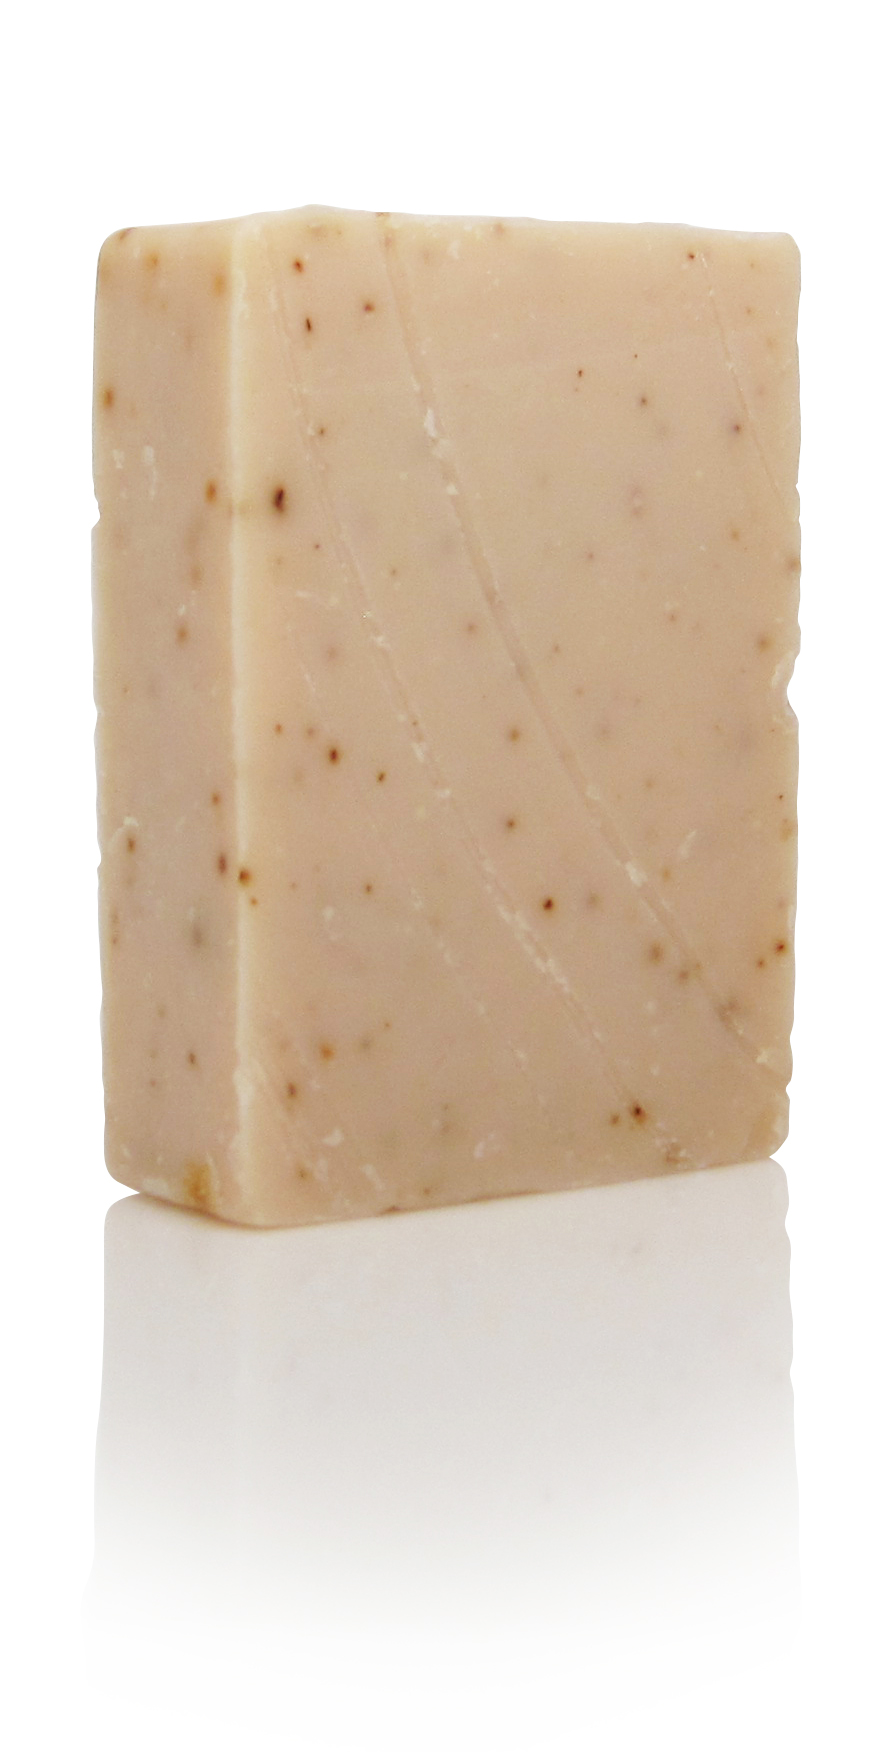 all natural patchouli mint soap